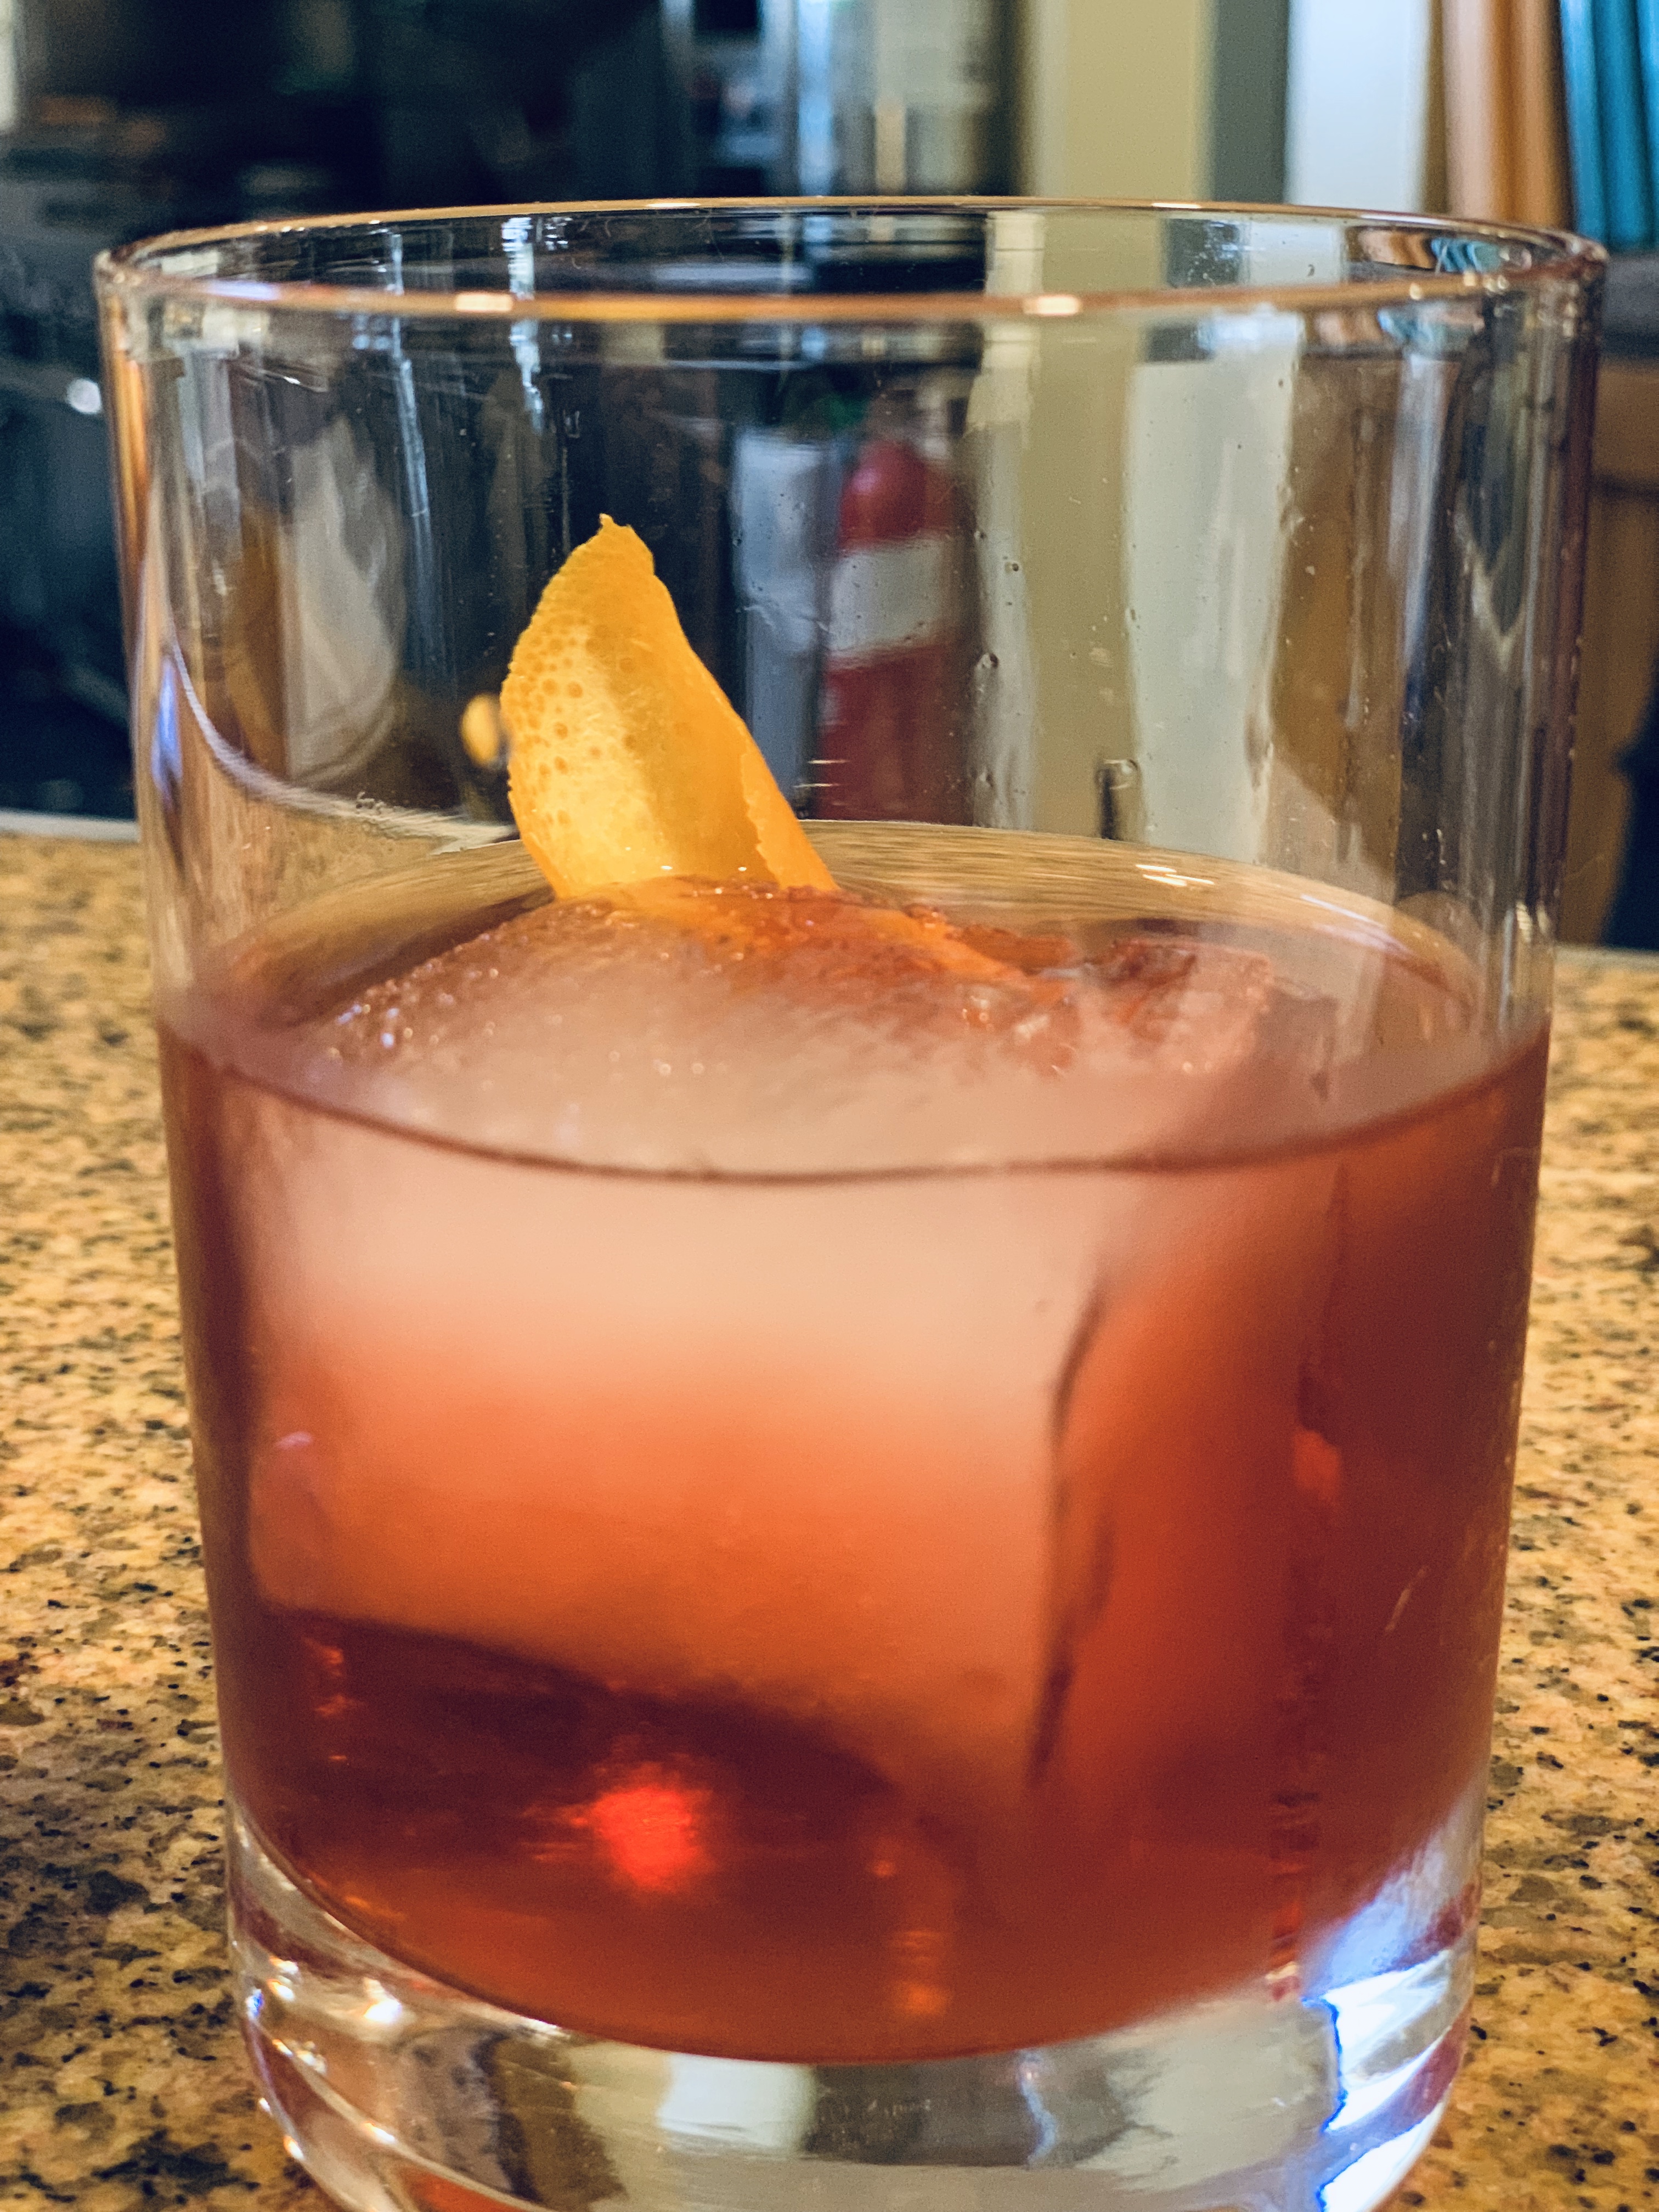 Barrel-aged cocktails